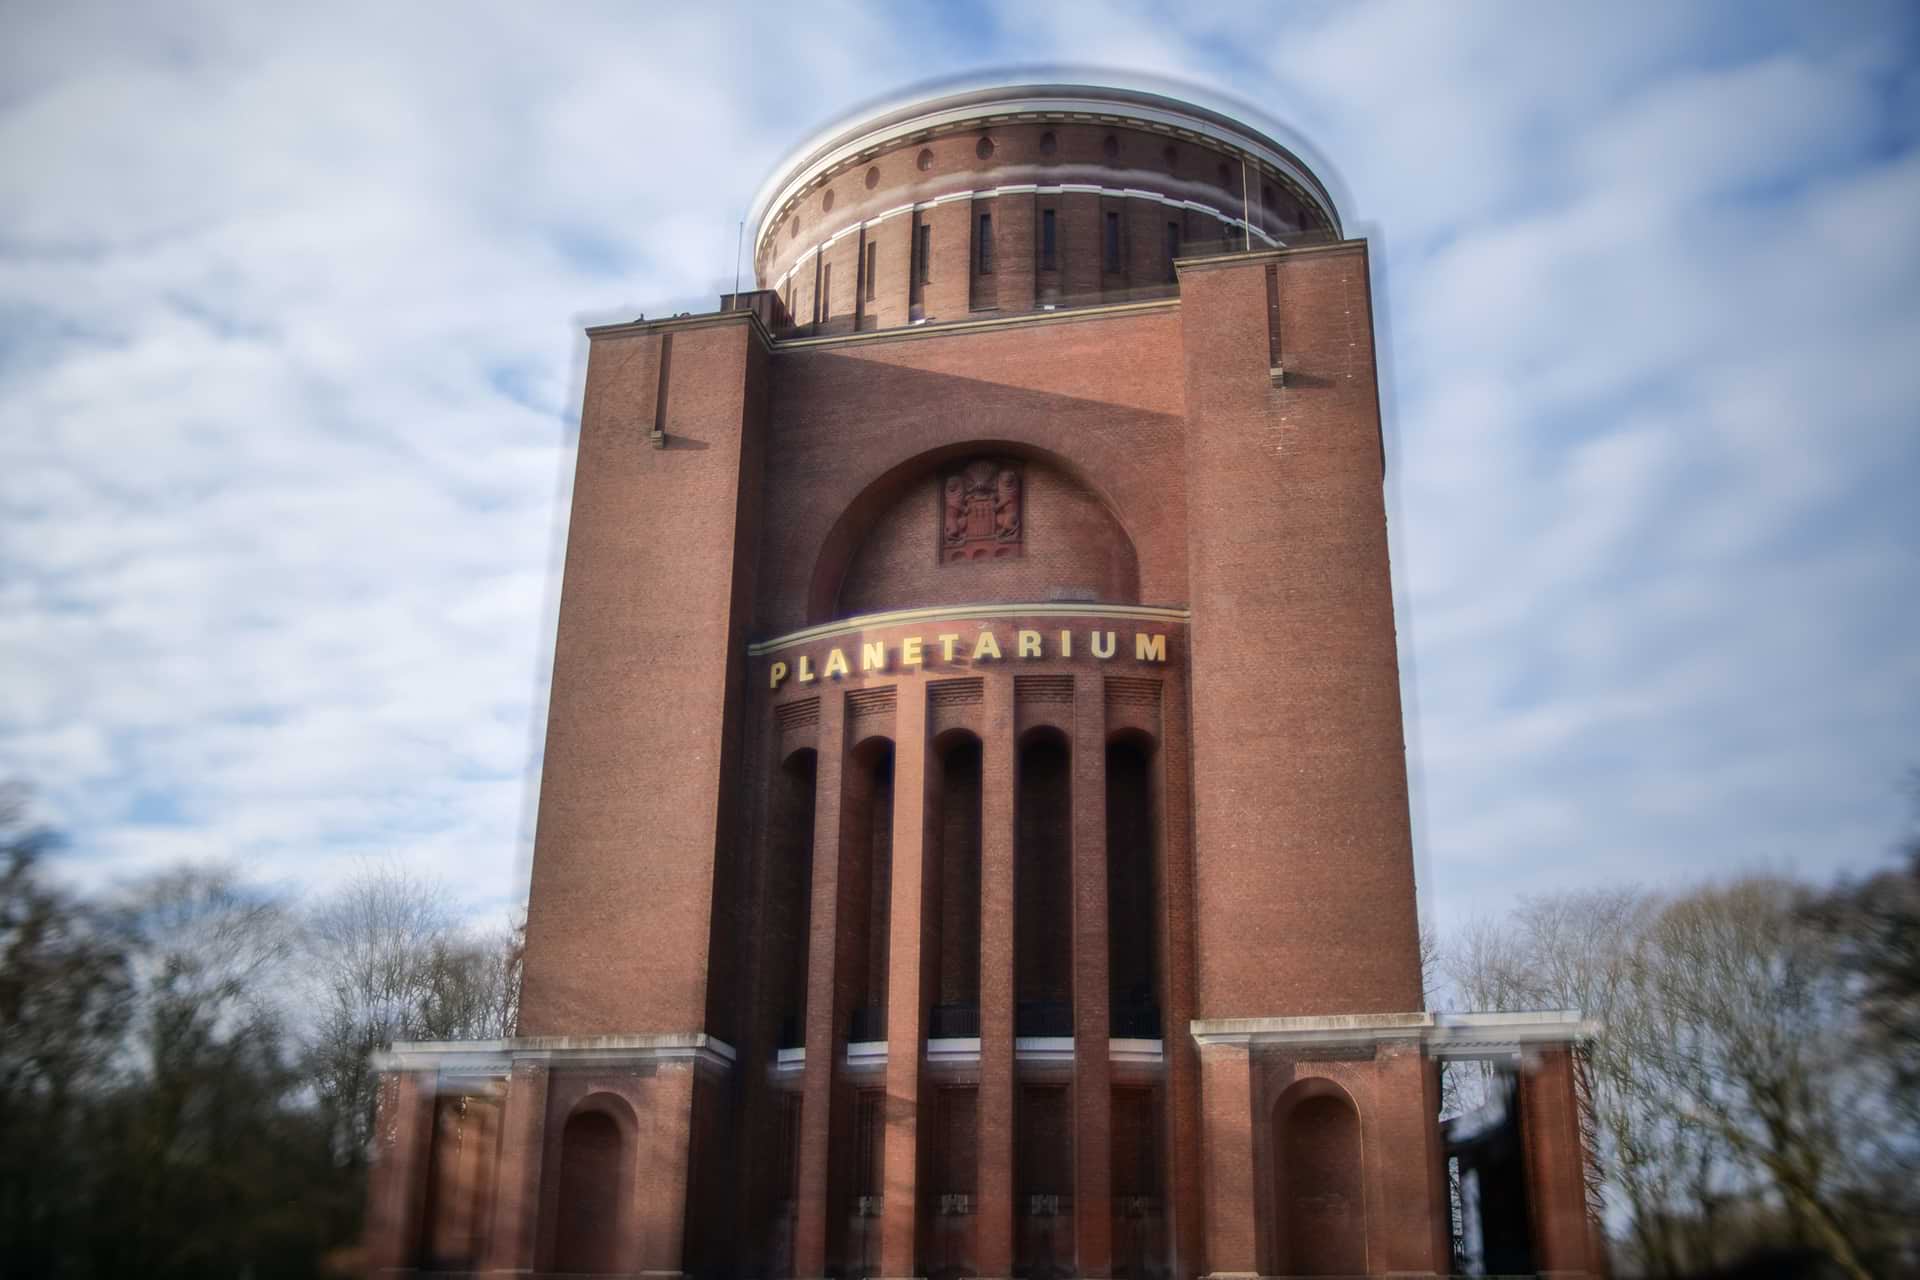 Sample Shot showing the Planetarium in Hamburg taken with Schneider-Kreuznach's Diopter Spot